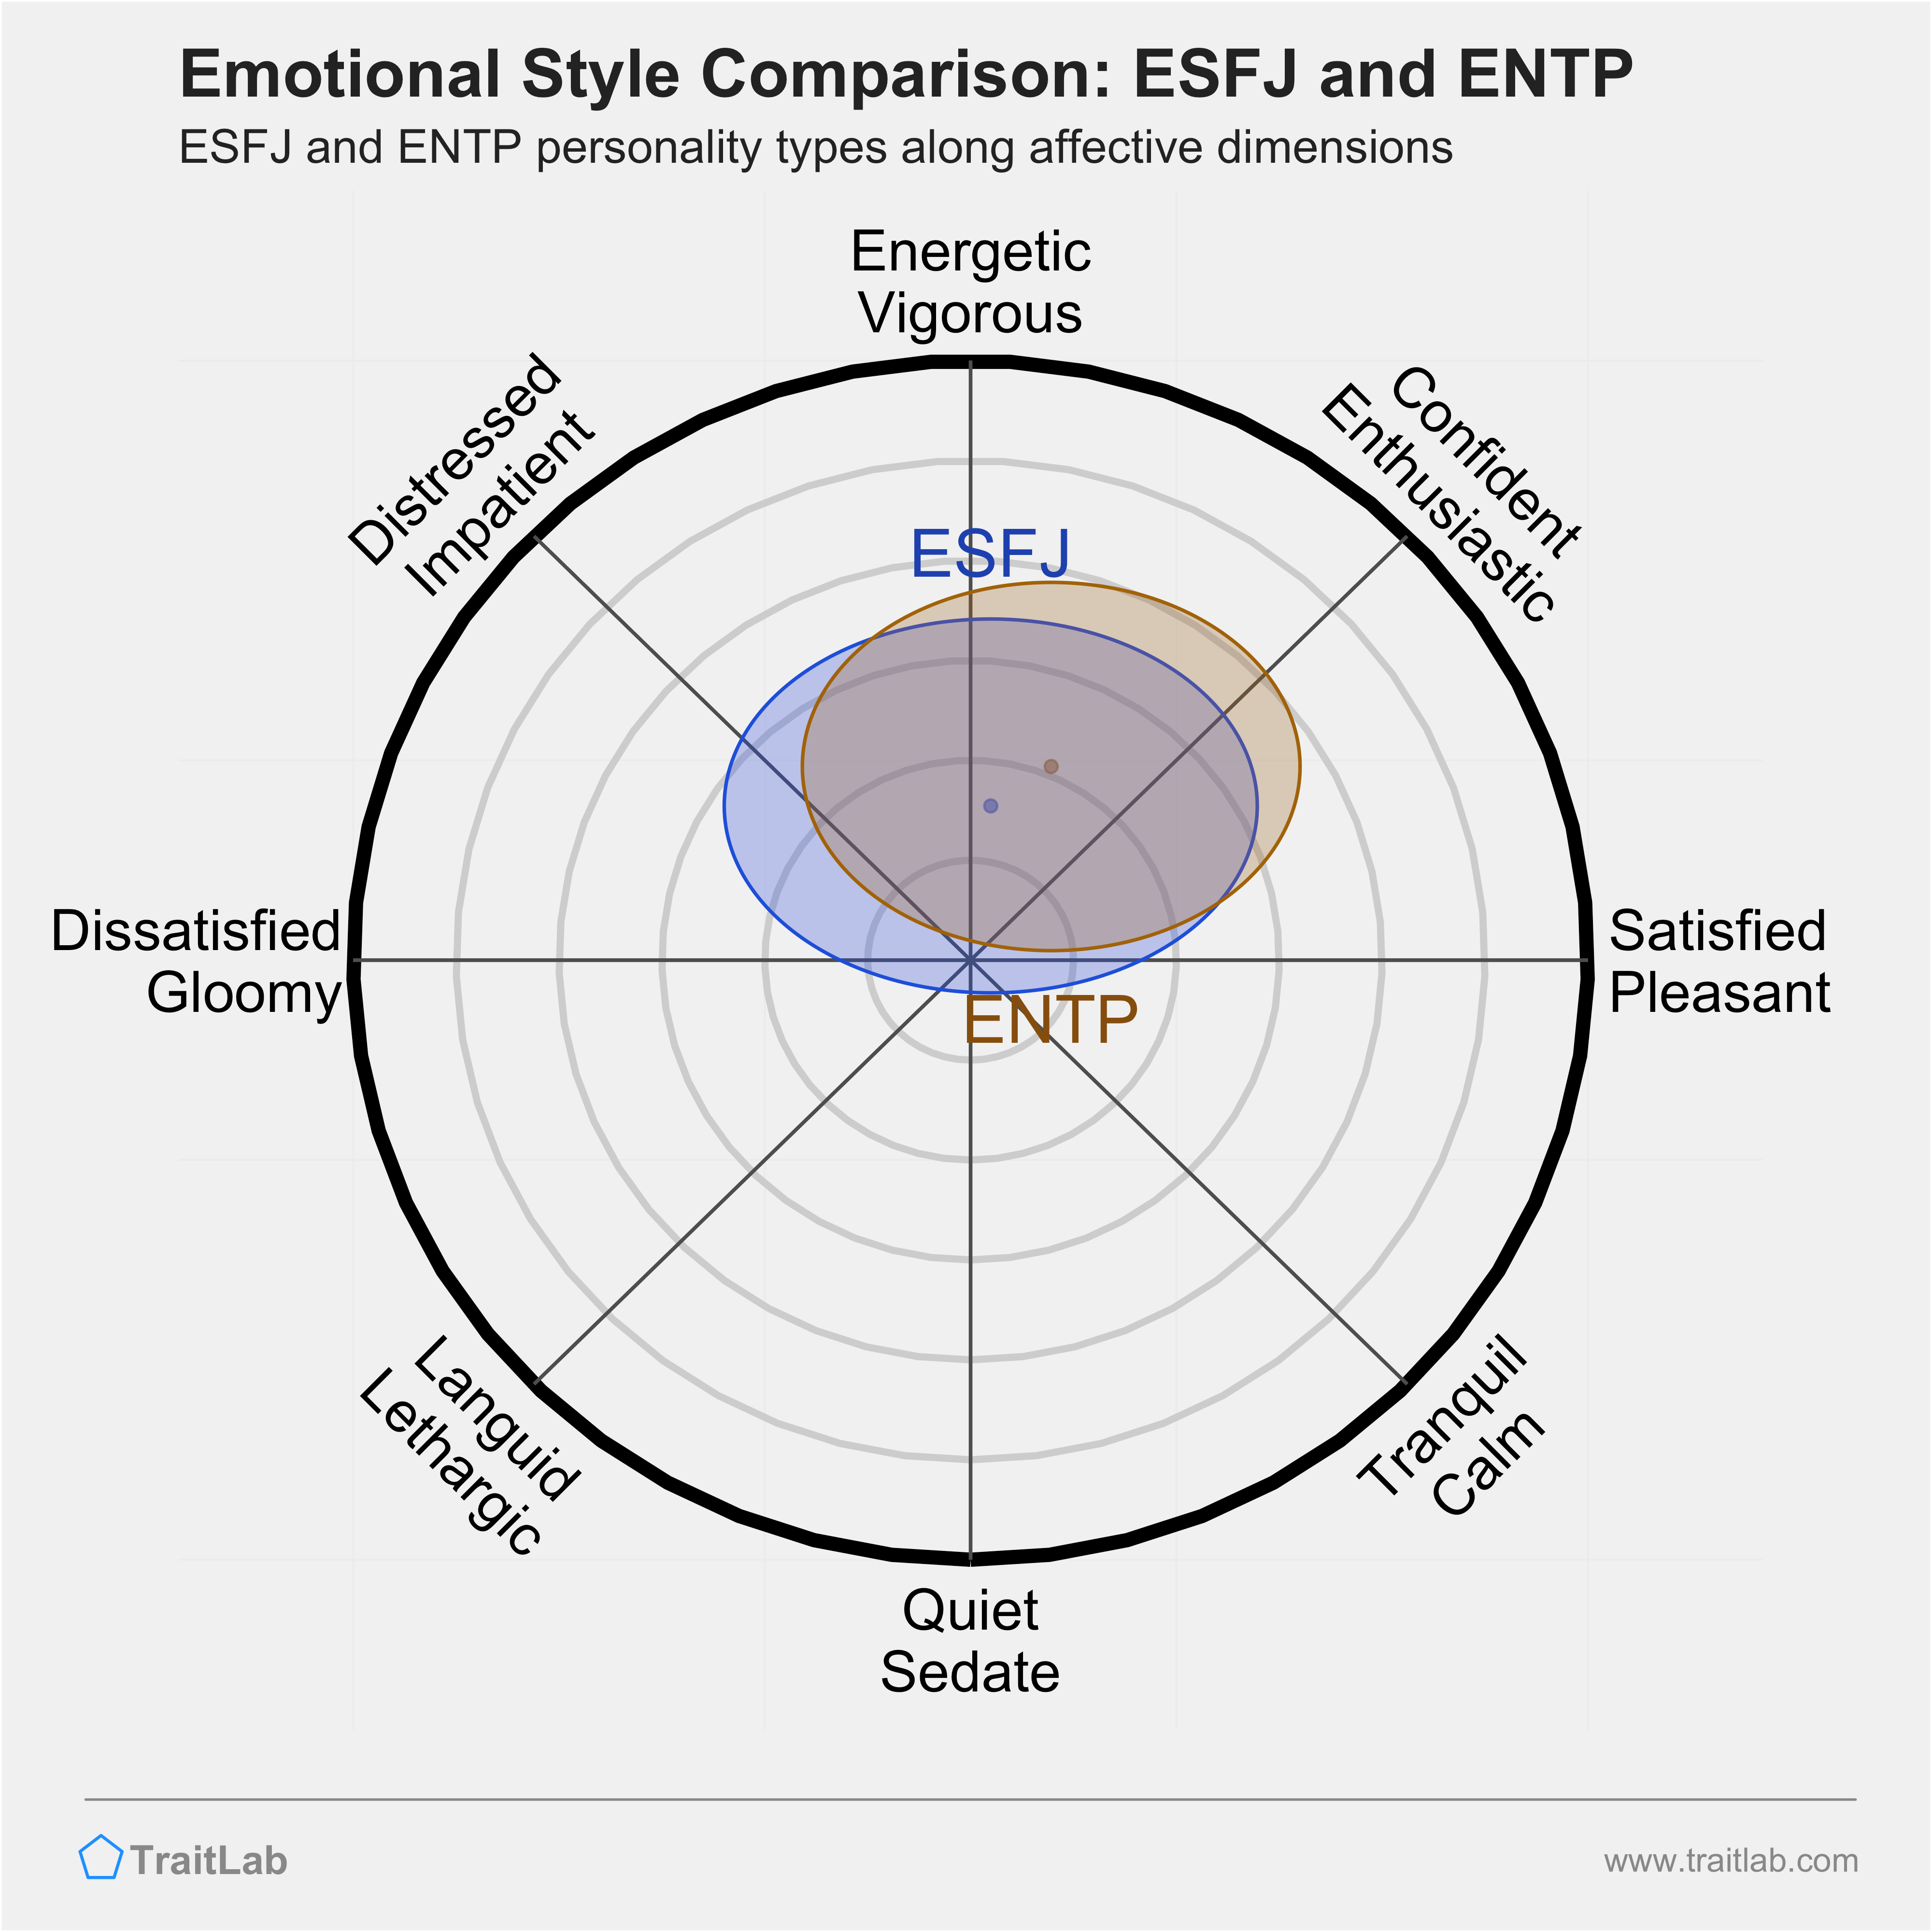 ESFJ and ENTP comparison across emotional (affective) dimensions